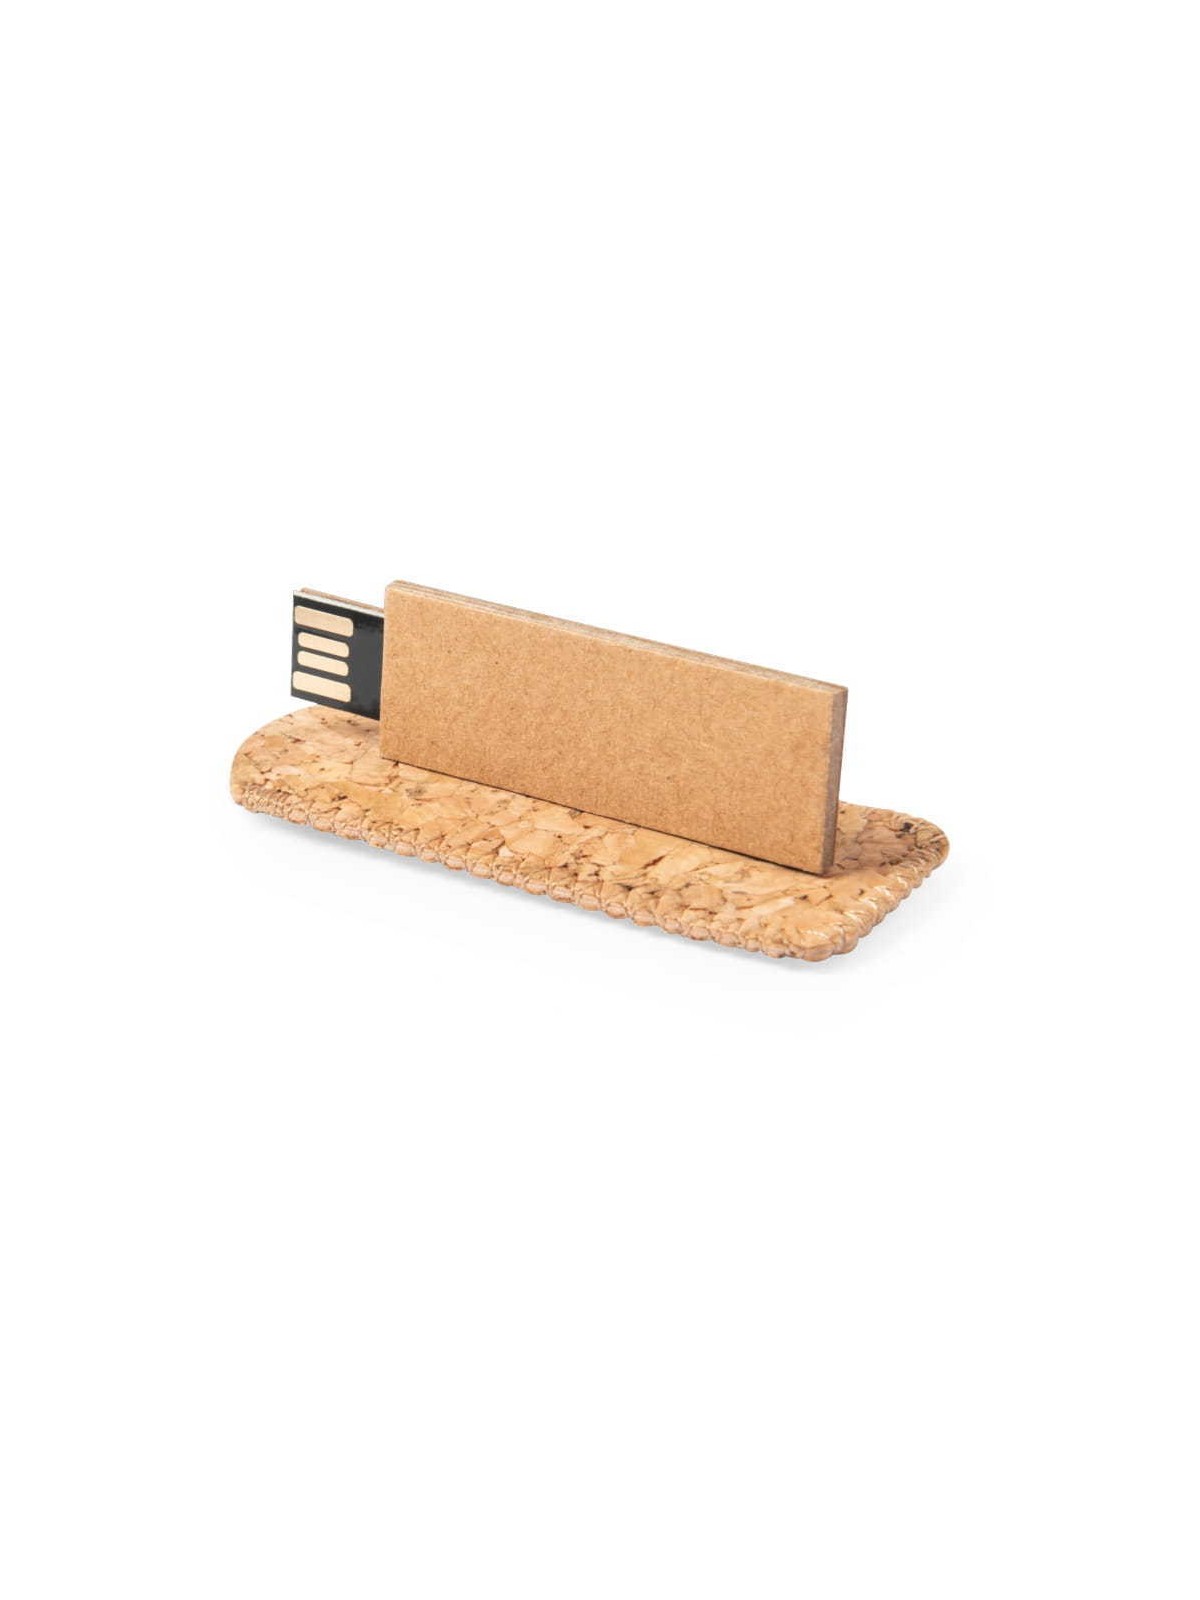 70-227 Clé USB carton avec pochette en liège  personnalisé